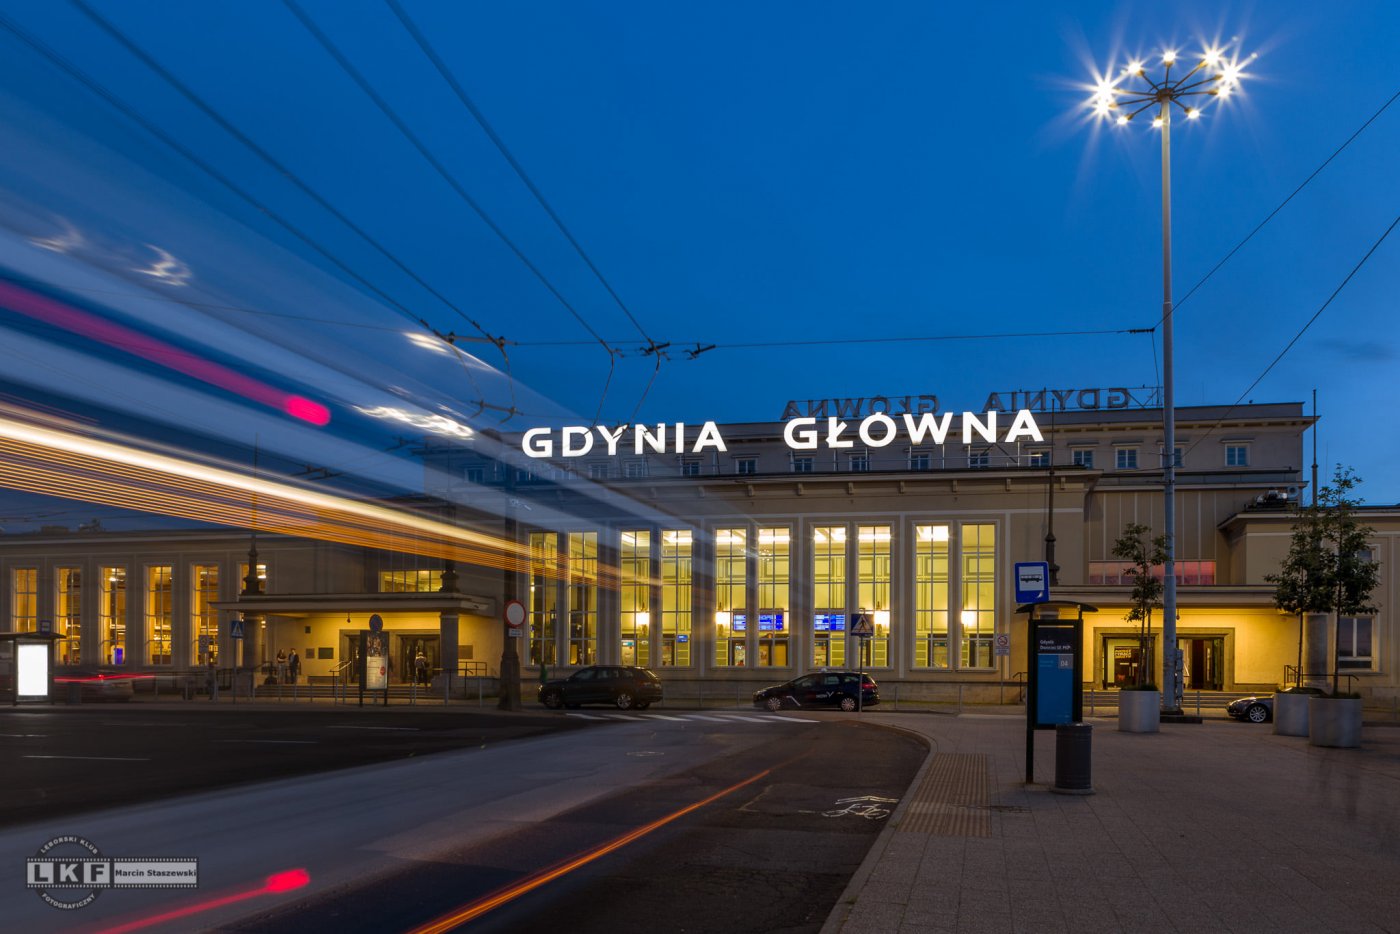 Front budynku dworca kolejowego w Gdyni po zmroku. Podświetlony napis 